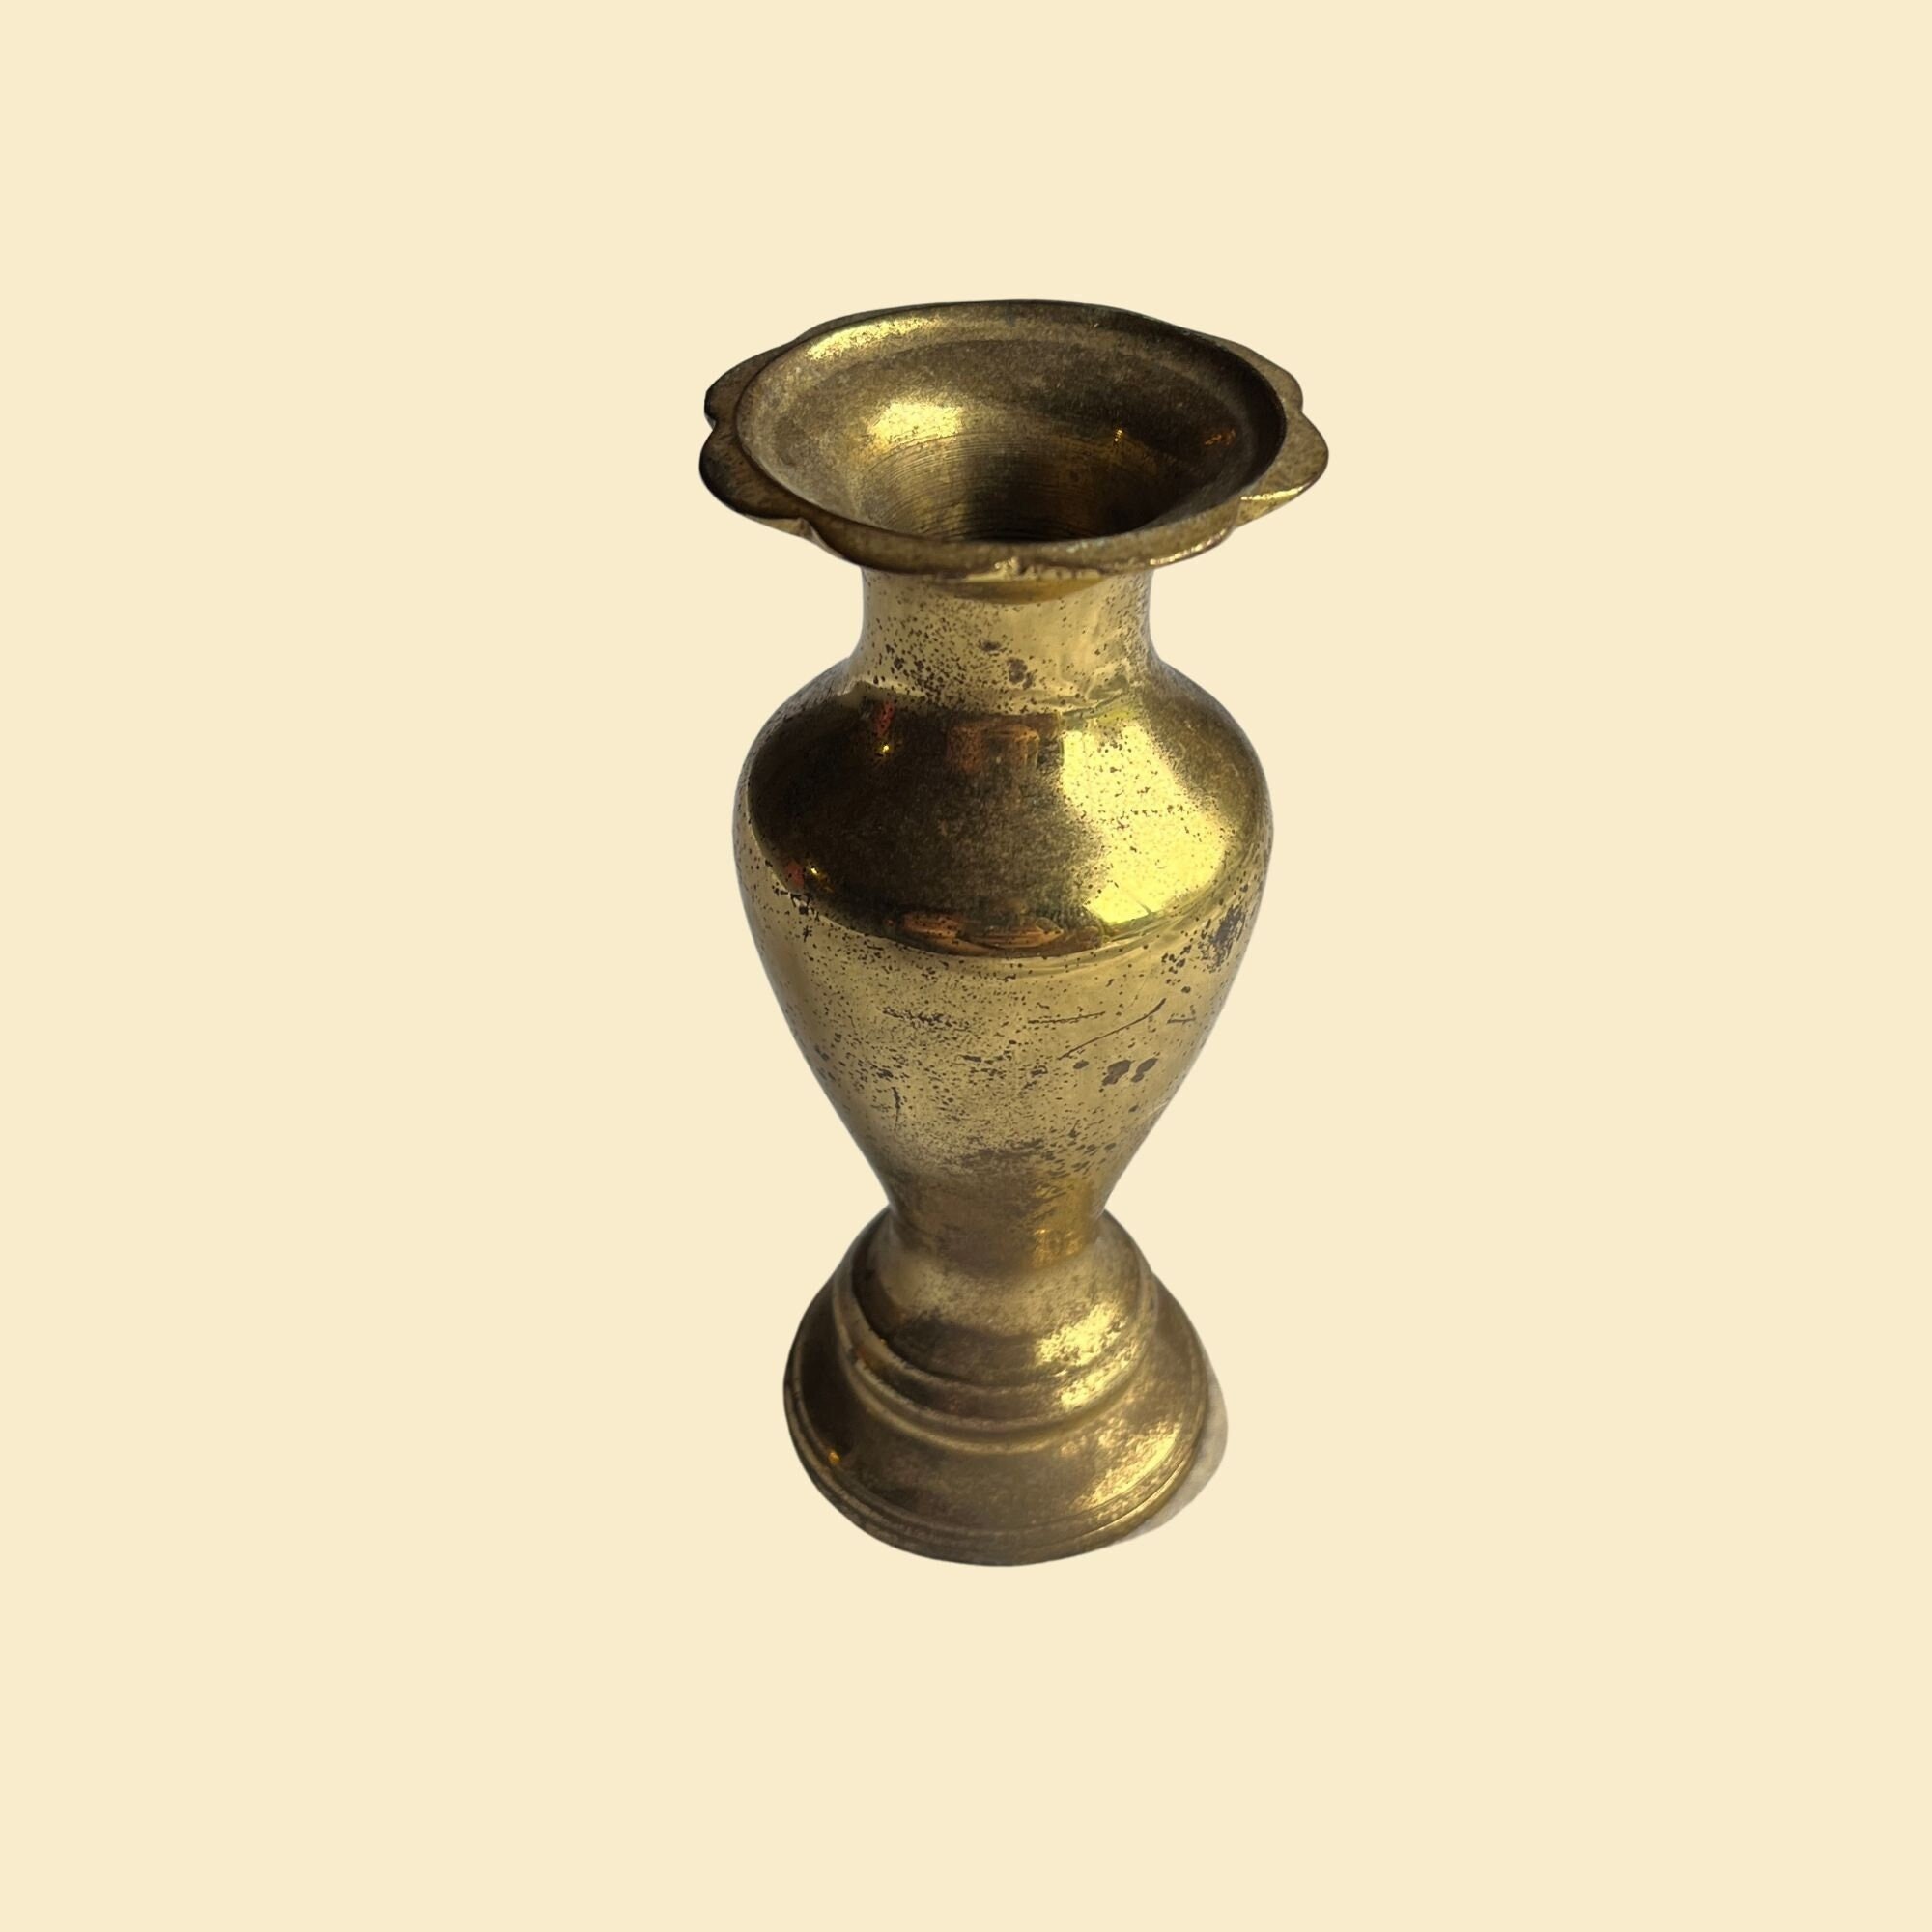 Brass Darkening Solution - Brass Patina - Metal Ager - 32 Ounce Bottle